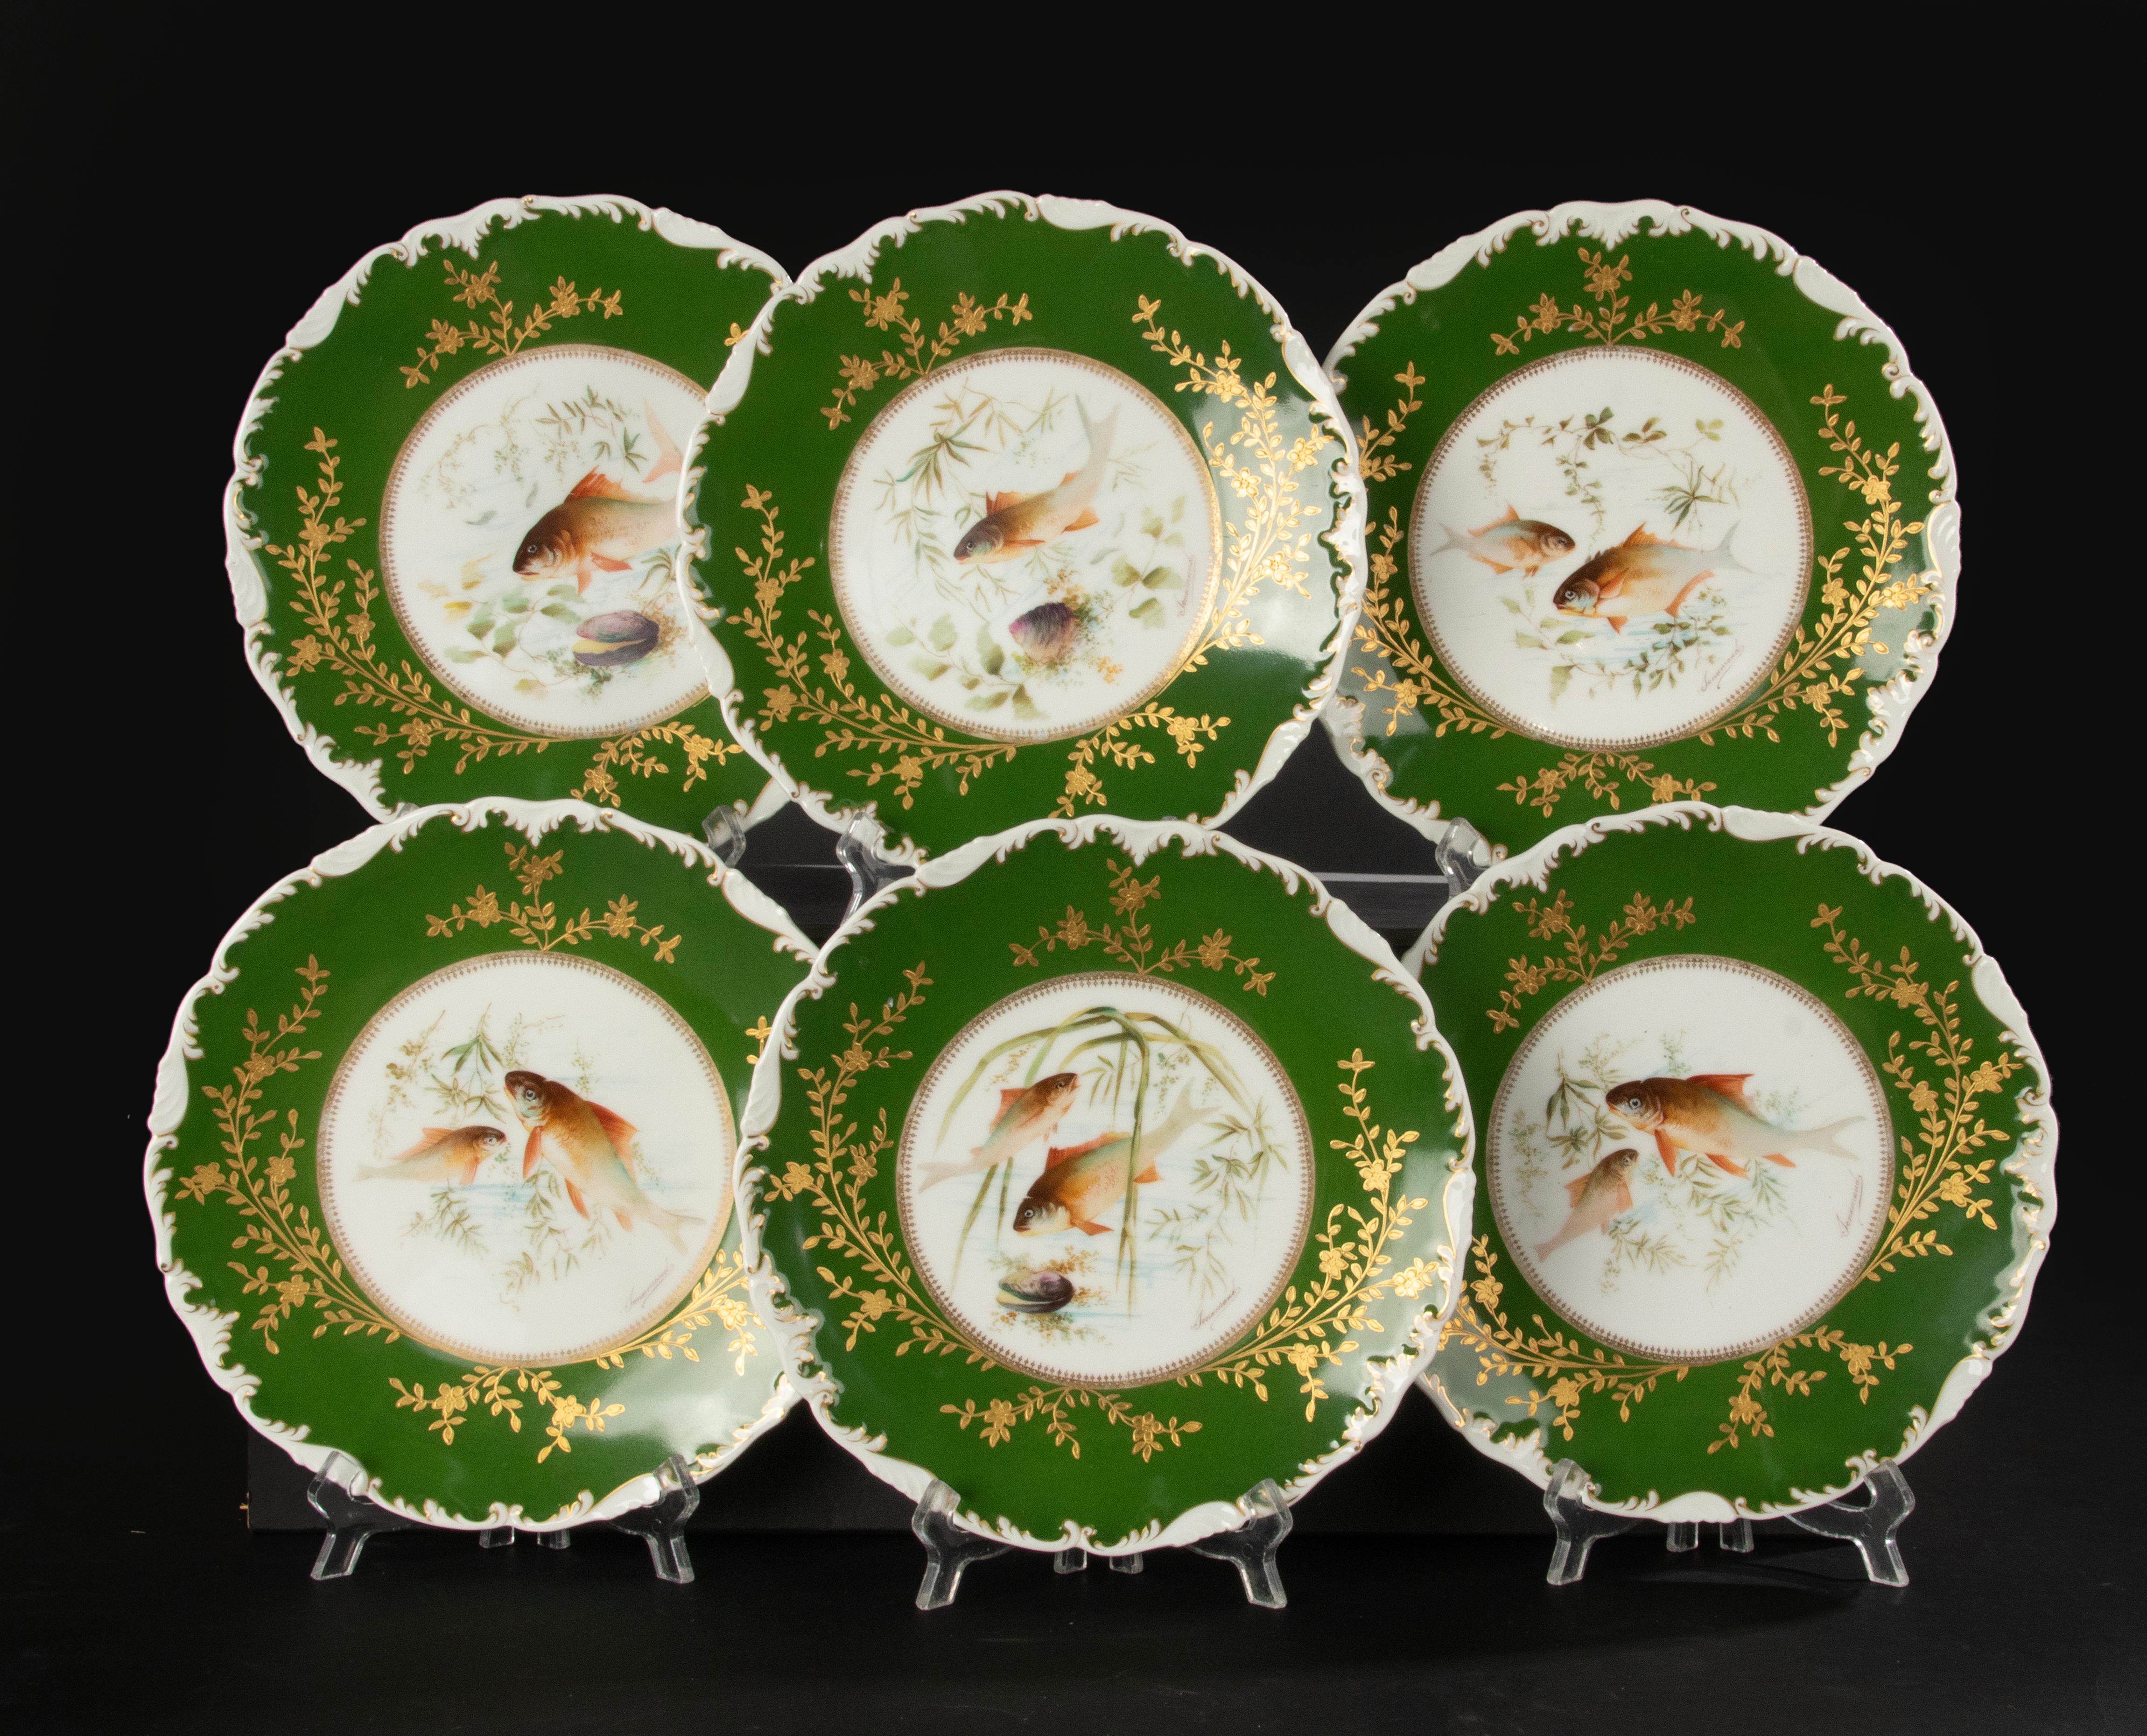 Estupendo juego de 6 platos de porcelana con forma de pez, fabricados por la marca francesa Limoges. Las planchas datan de alrededor de 1900-1910. Están decoradas y firmadas por Tressemanes & Vogt. 
Las placas están en muy buen estado. Sin